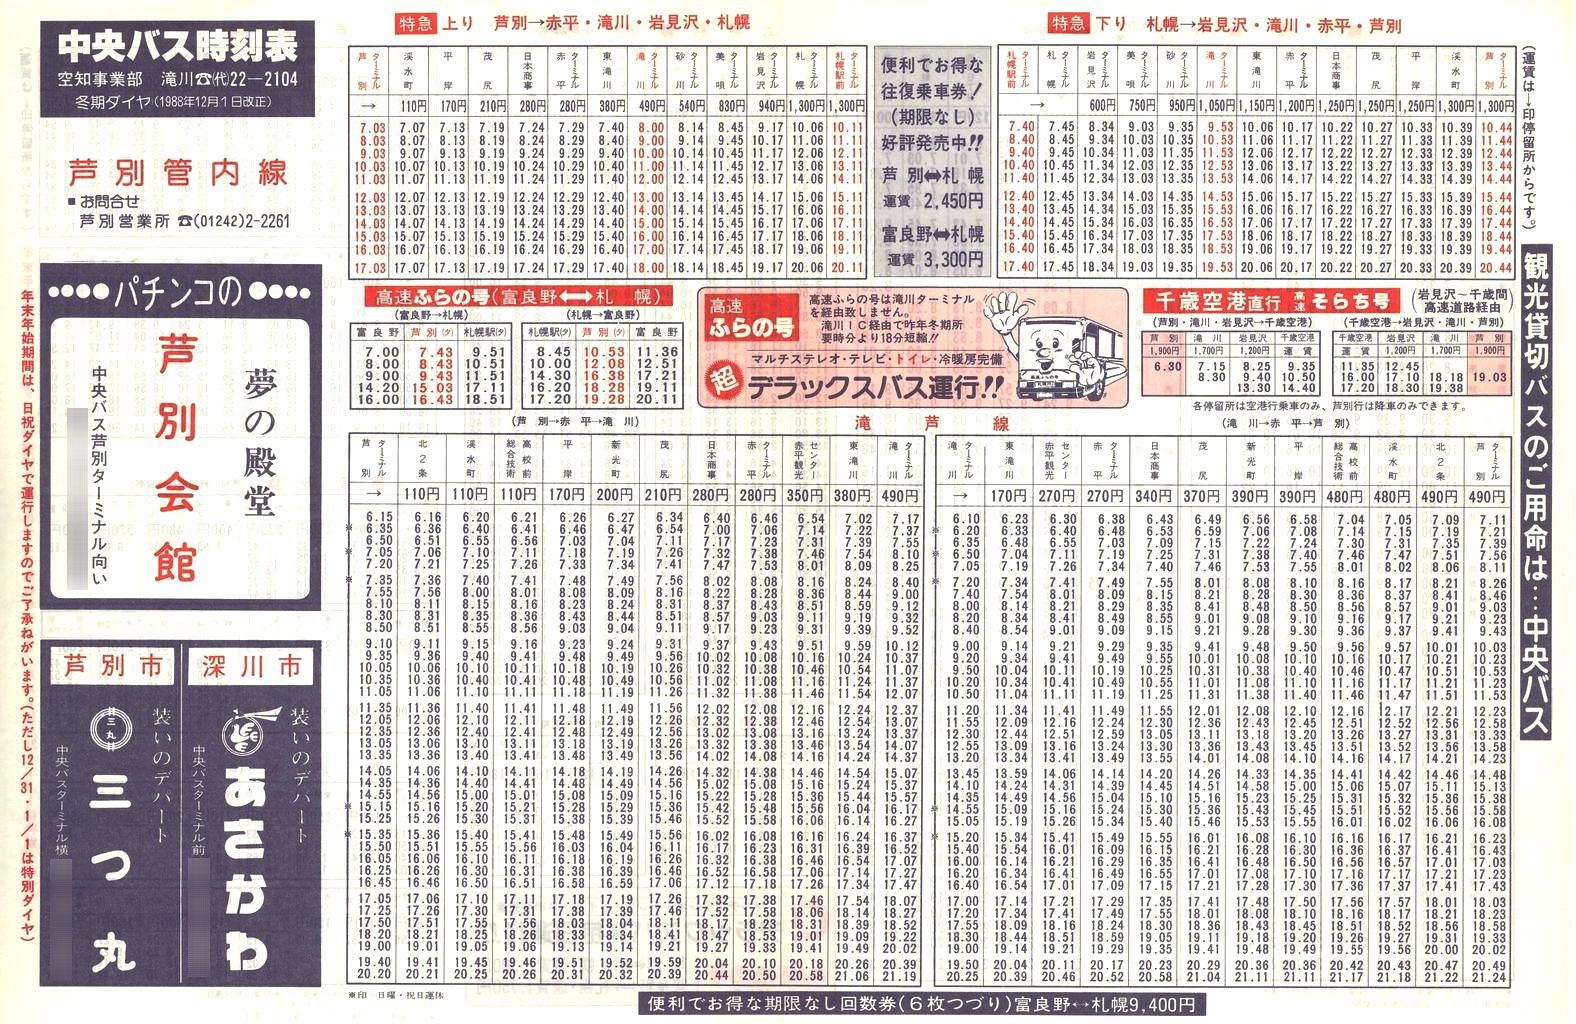 1988-12-01改正_北海道中央バス(空知)_芦別管内線時刻表表面